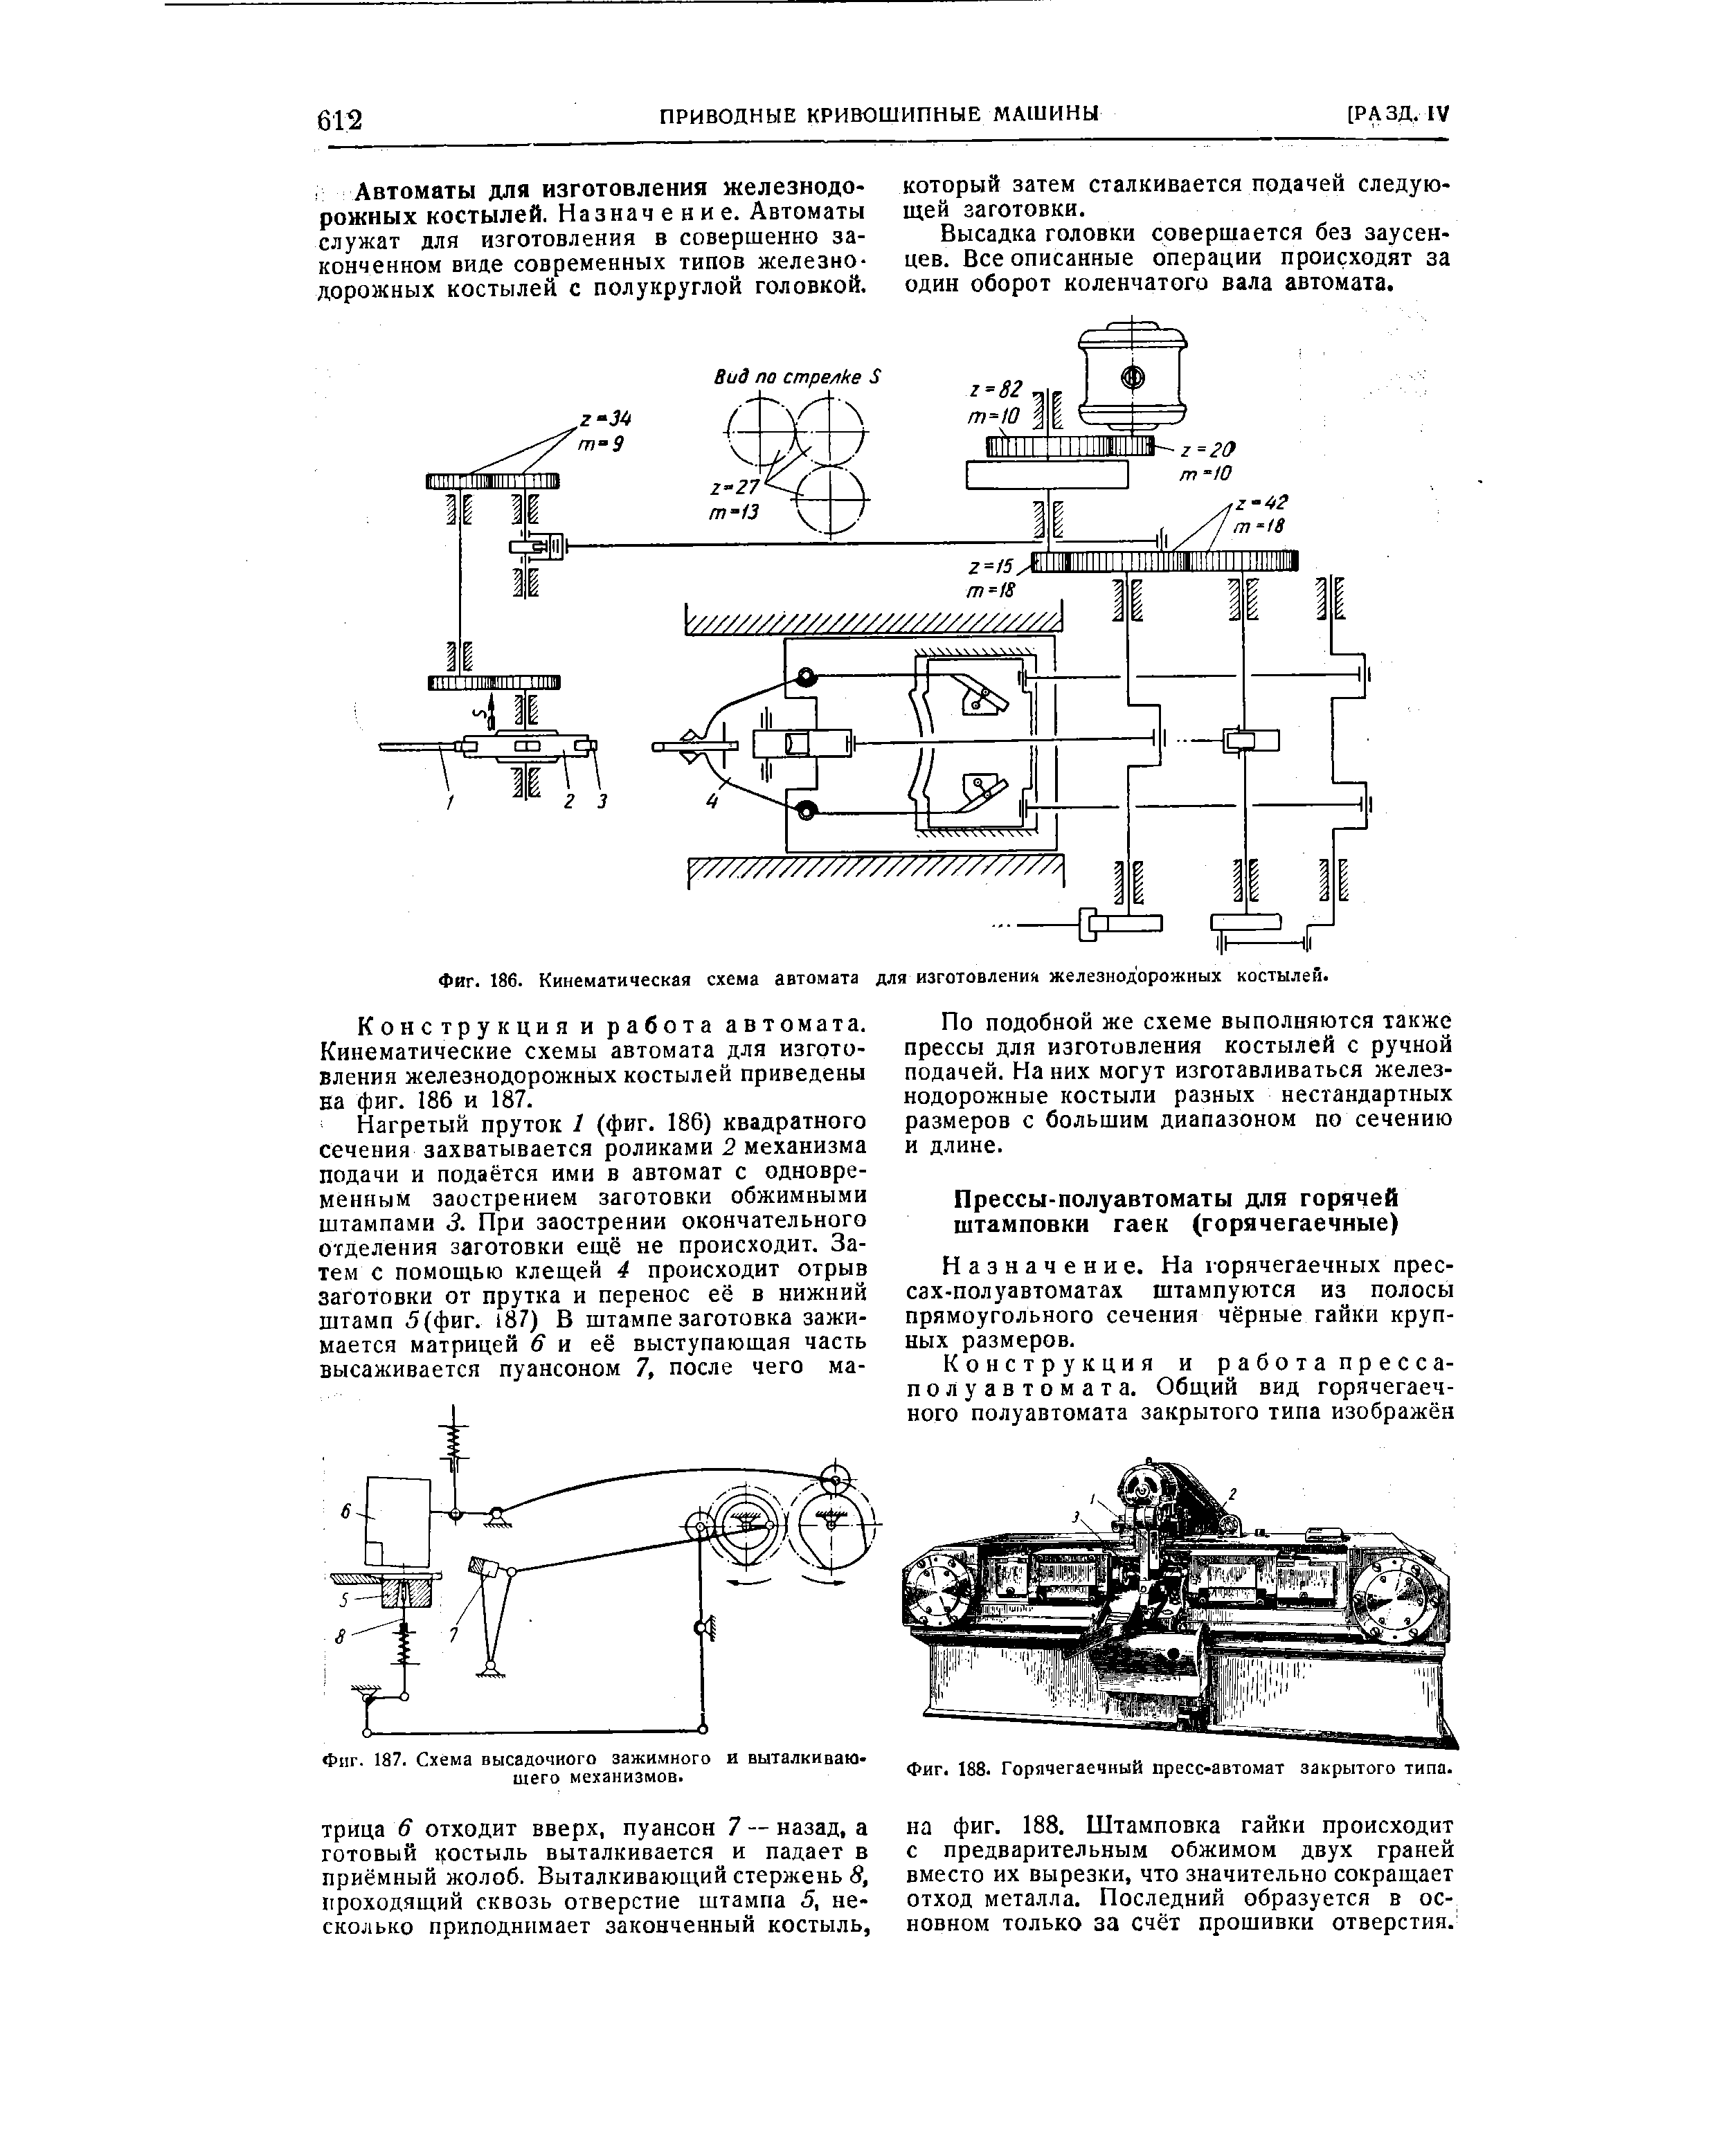 Фиг. 186. Кинематическая схема автомата для изготовления железнодорожных костылей.
